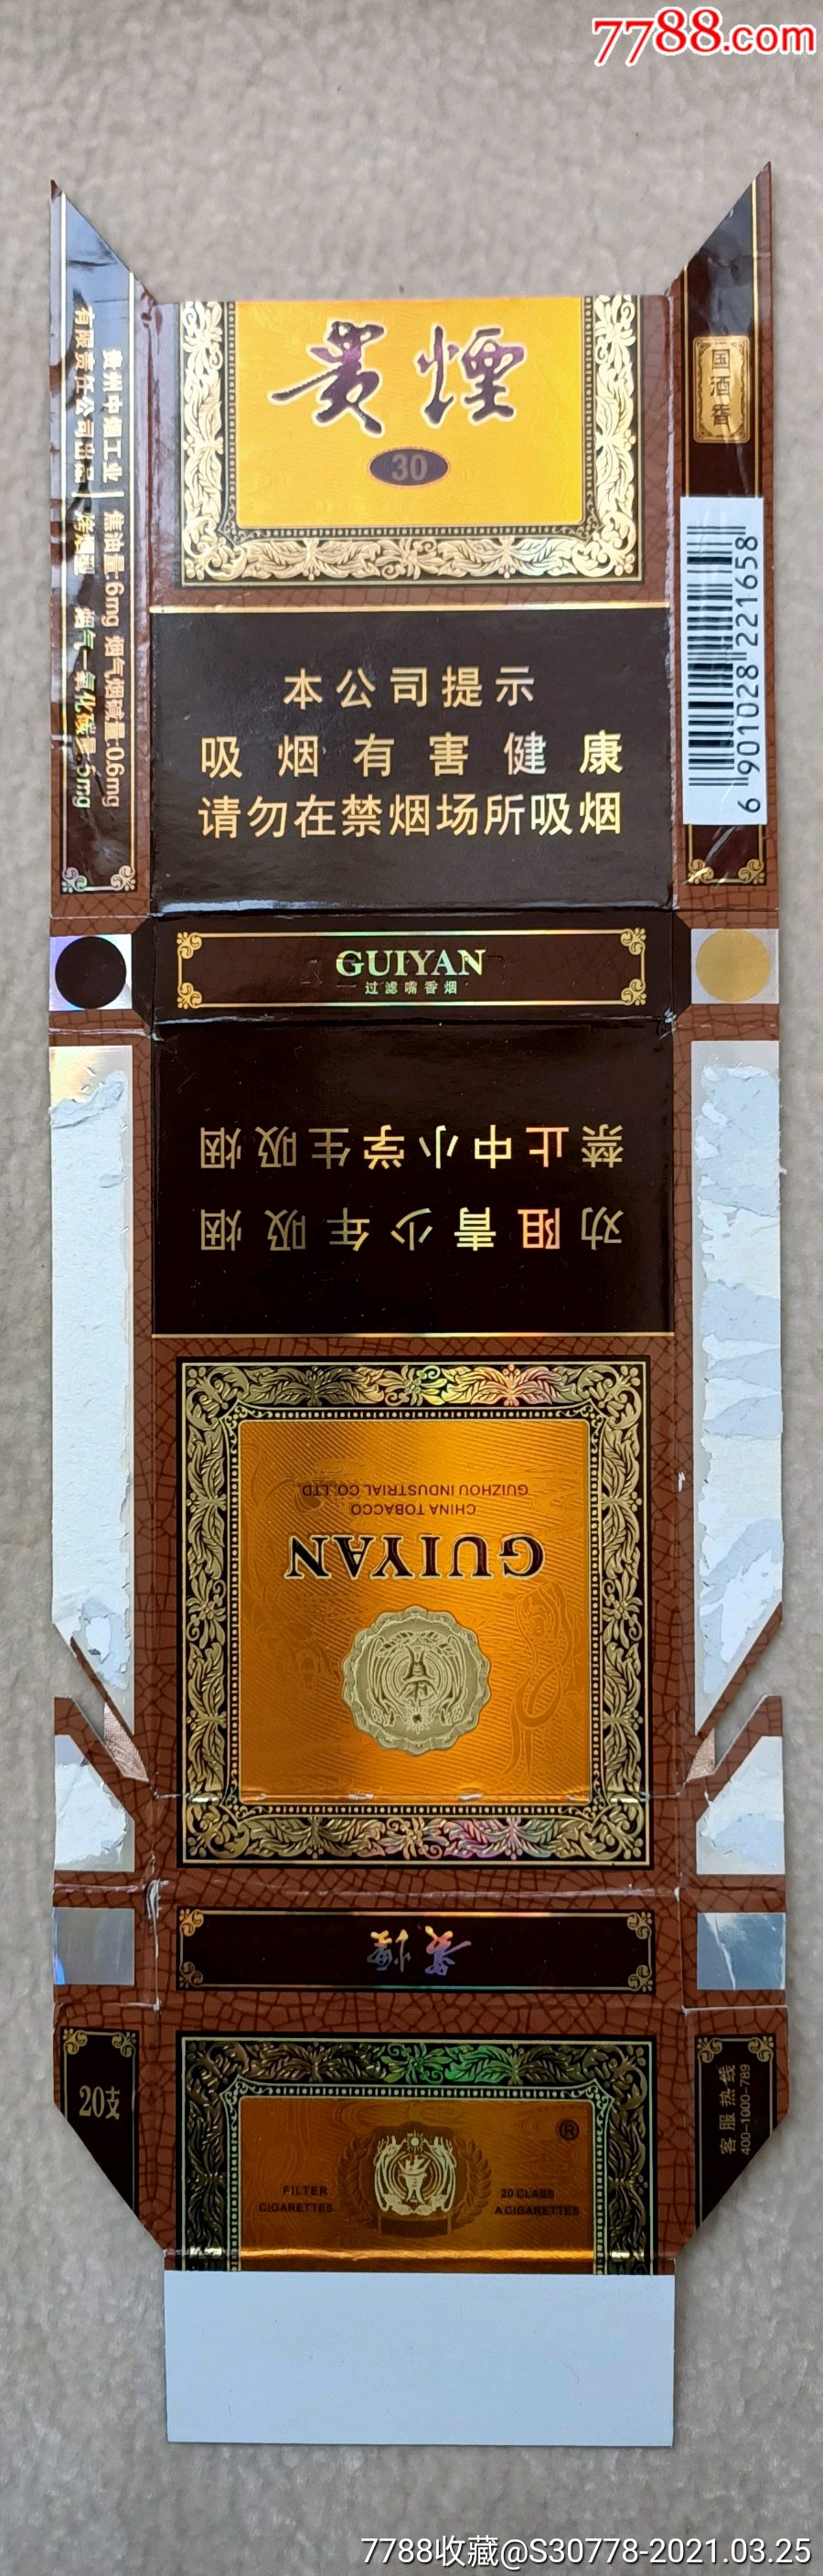 贵烟国酒香软盒图片